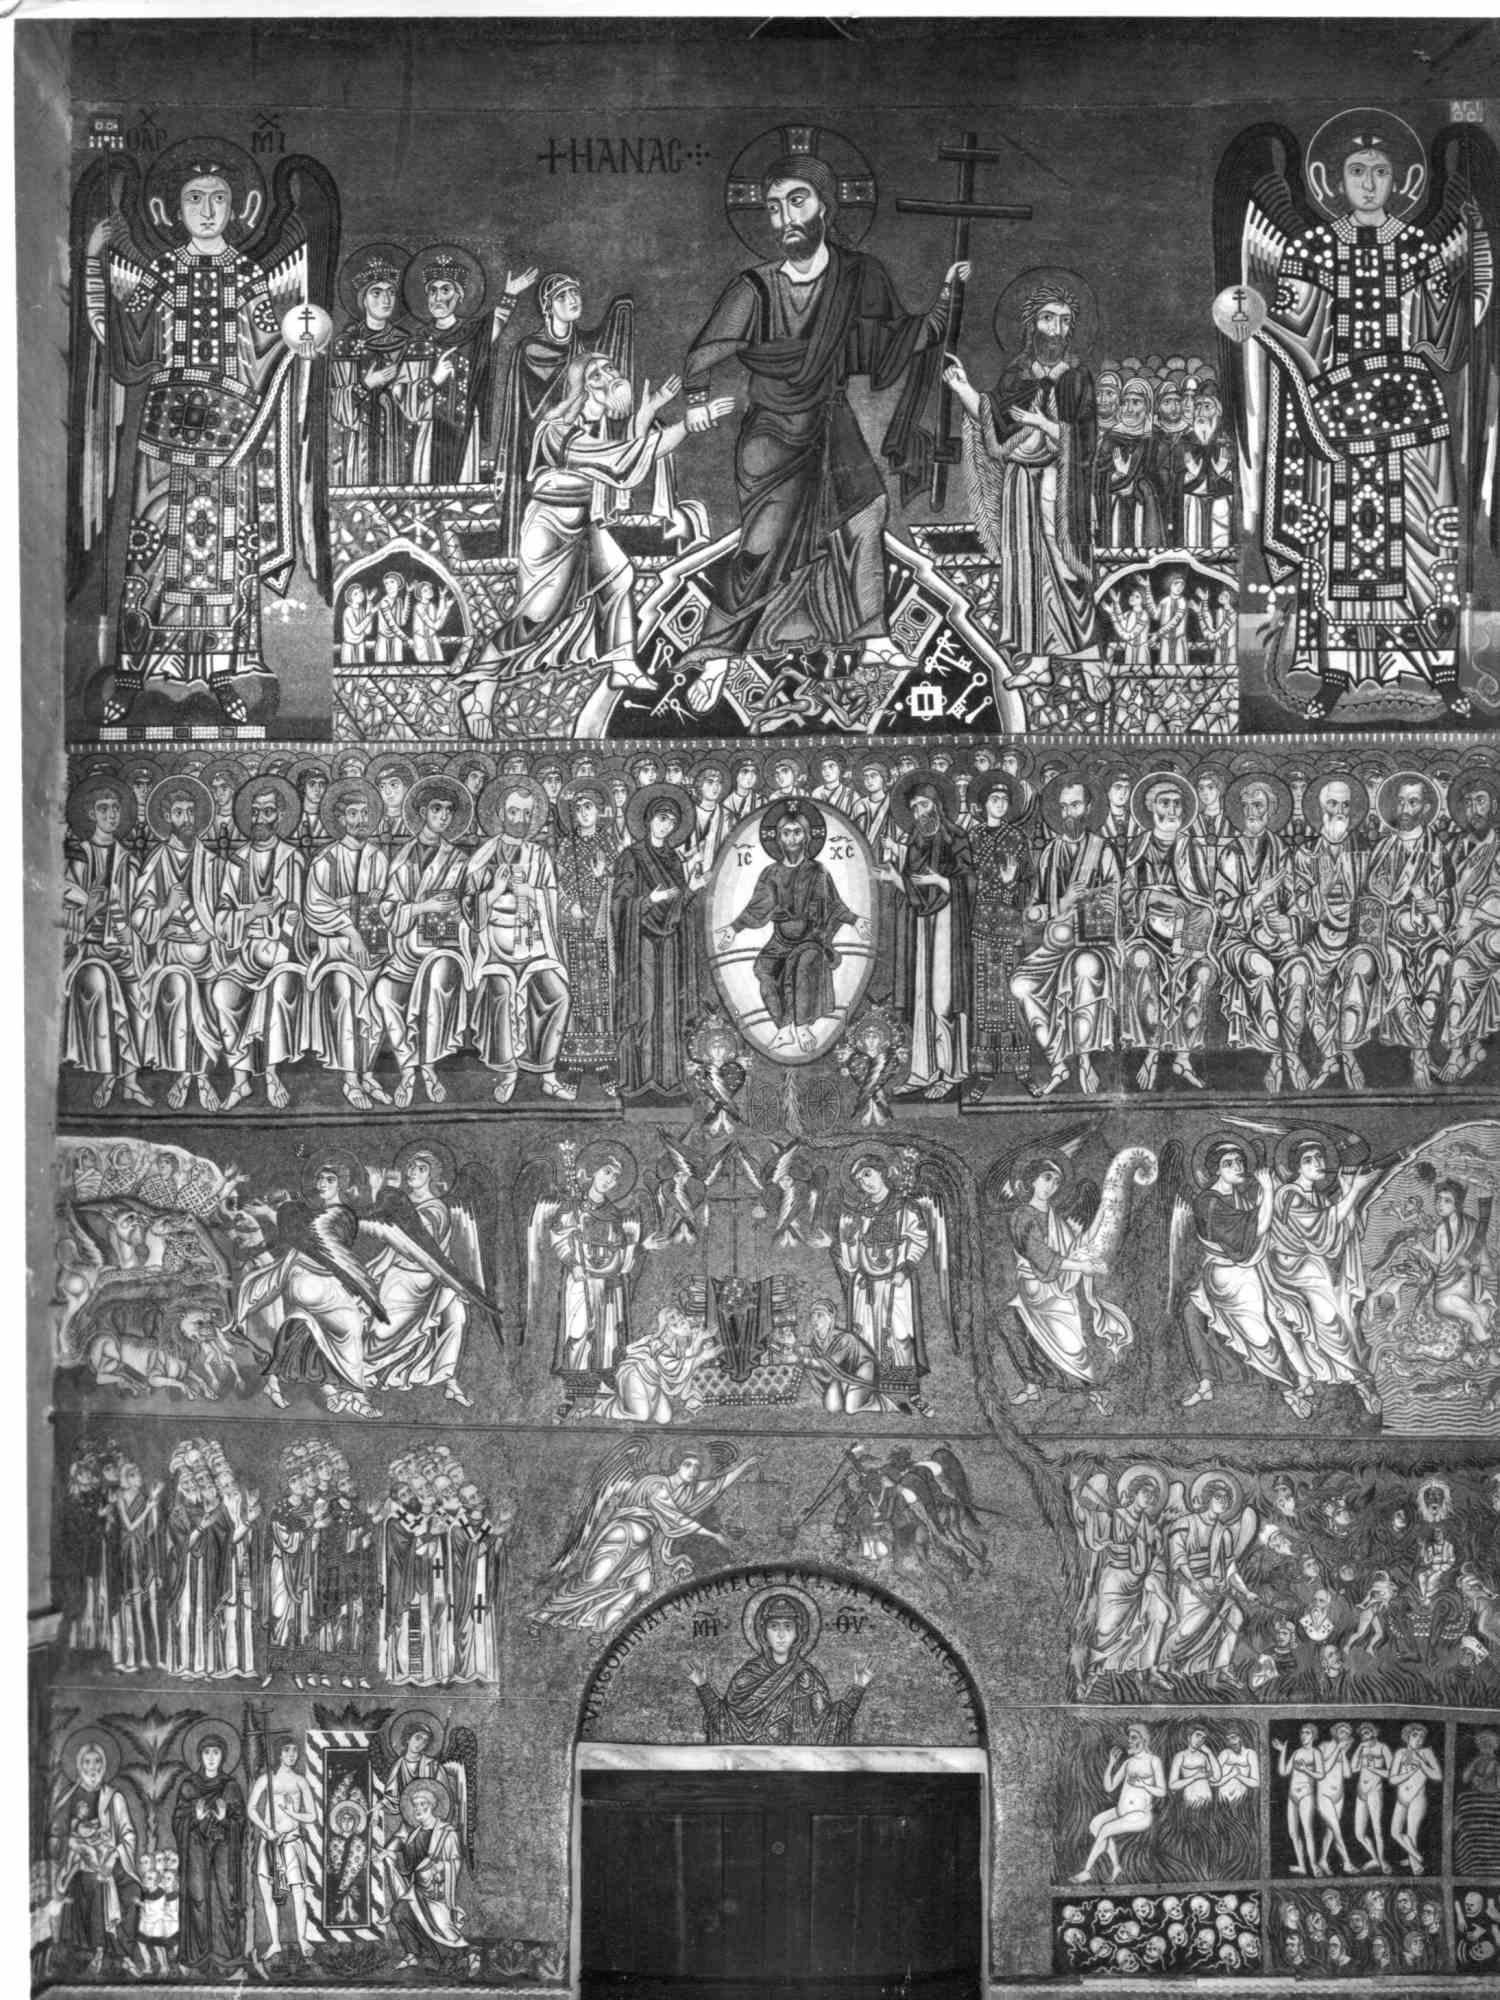 Unknown Black and White Photograph – Torcellos Kathedralendetails – Originalfotografie – frühes 20. Jahrhundert